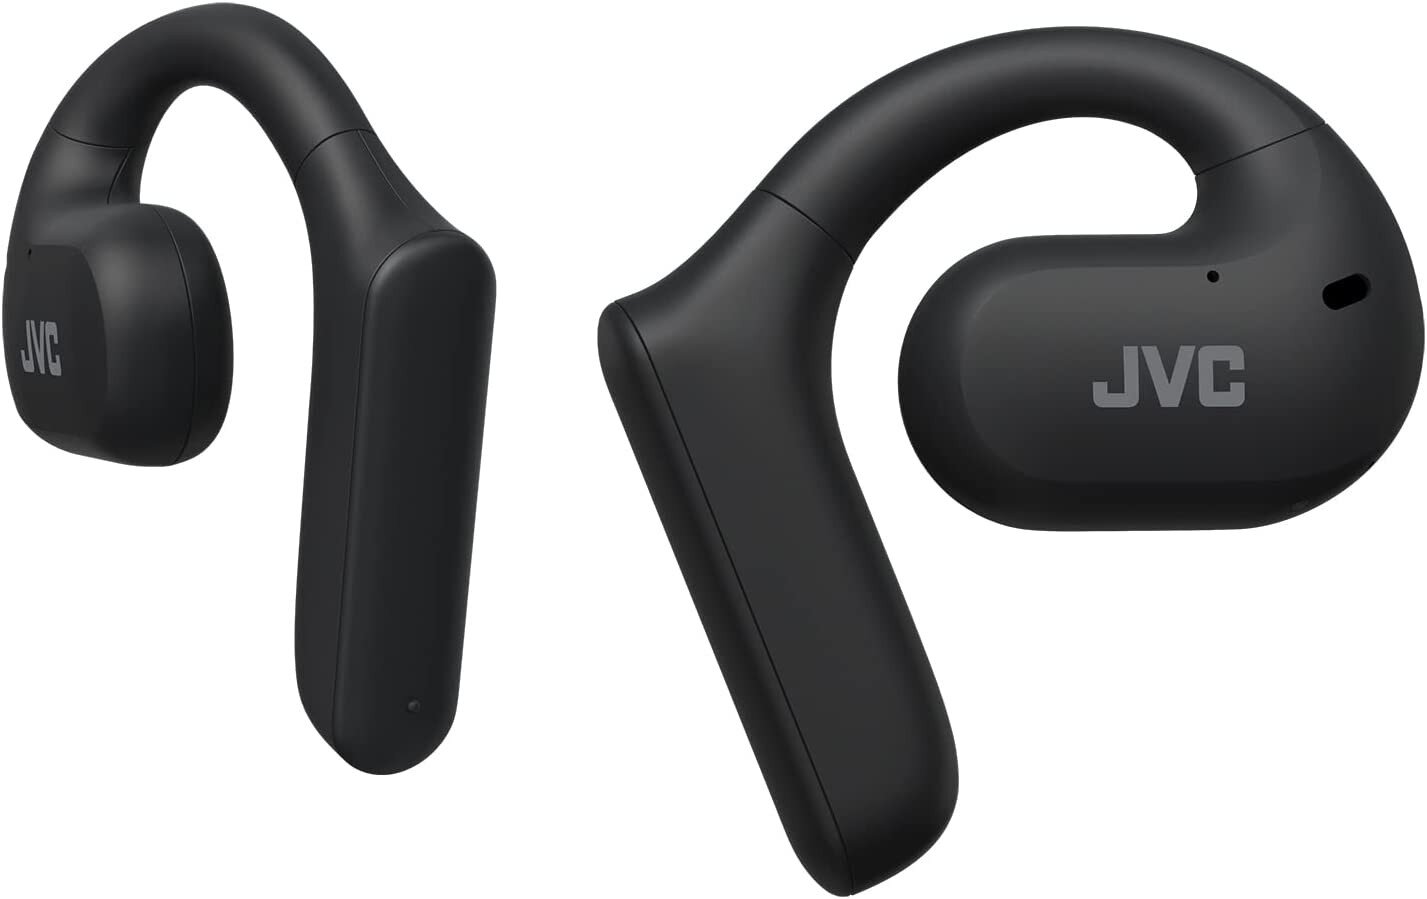 JVC HA-NP35T Open-Ear Wireless Earphones